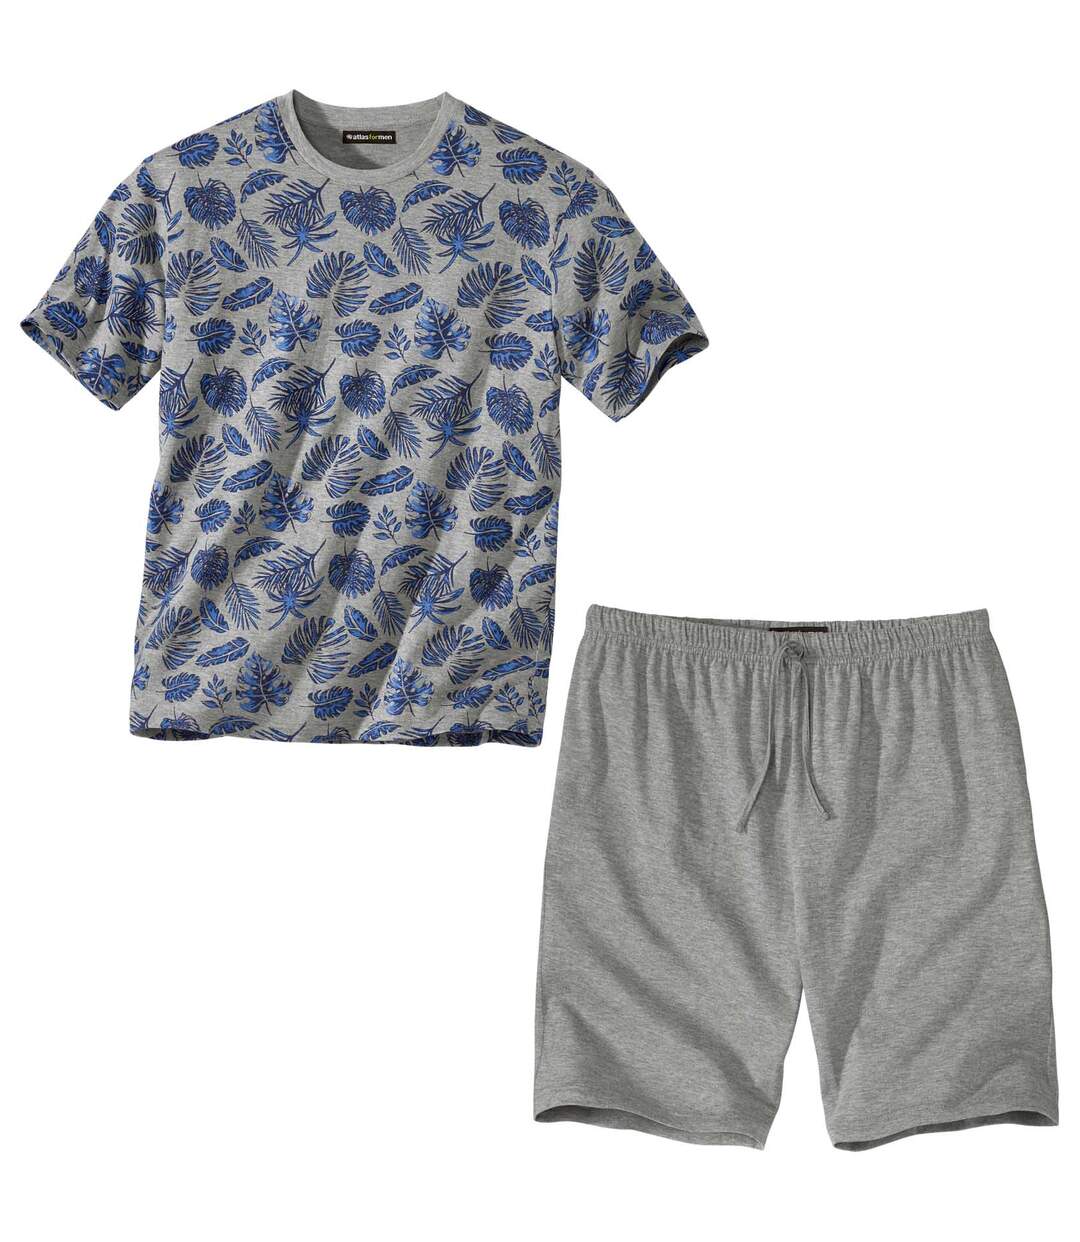 Krátké pyžamo s potiskem tropických motivů Atlas For Men